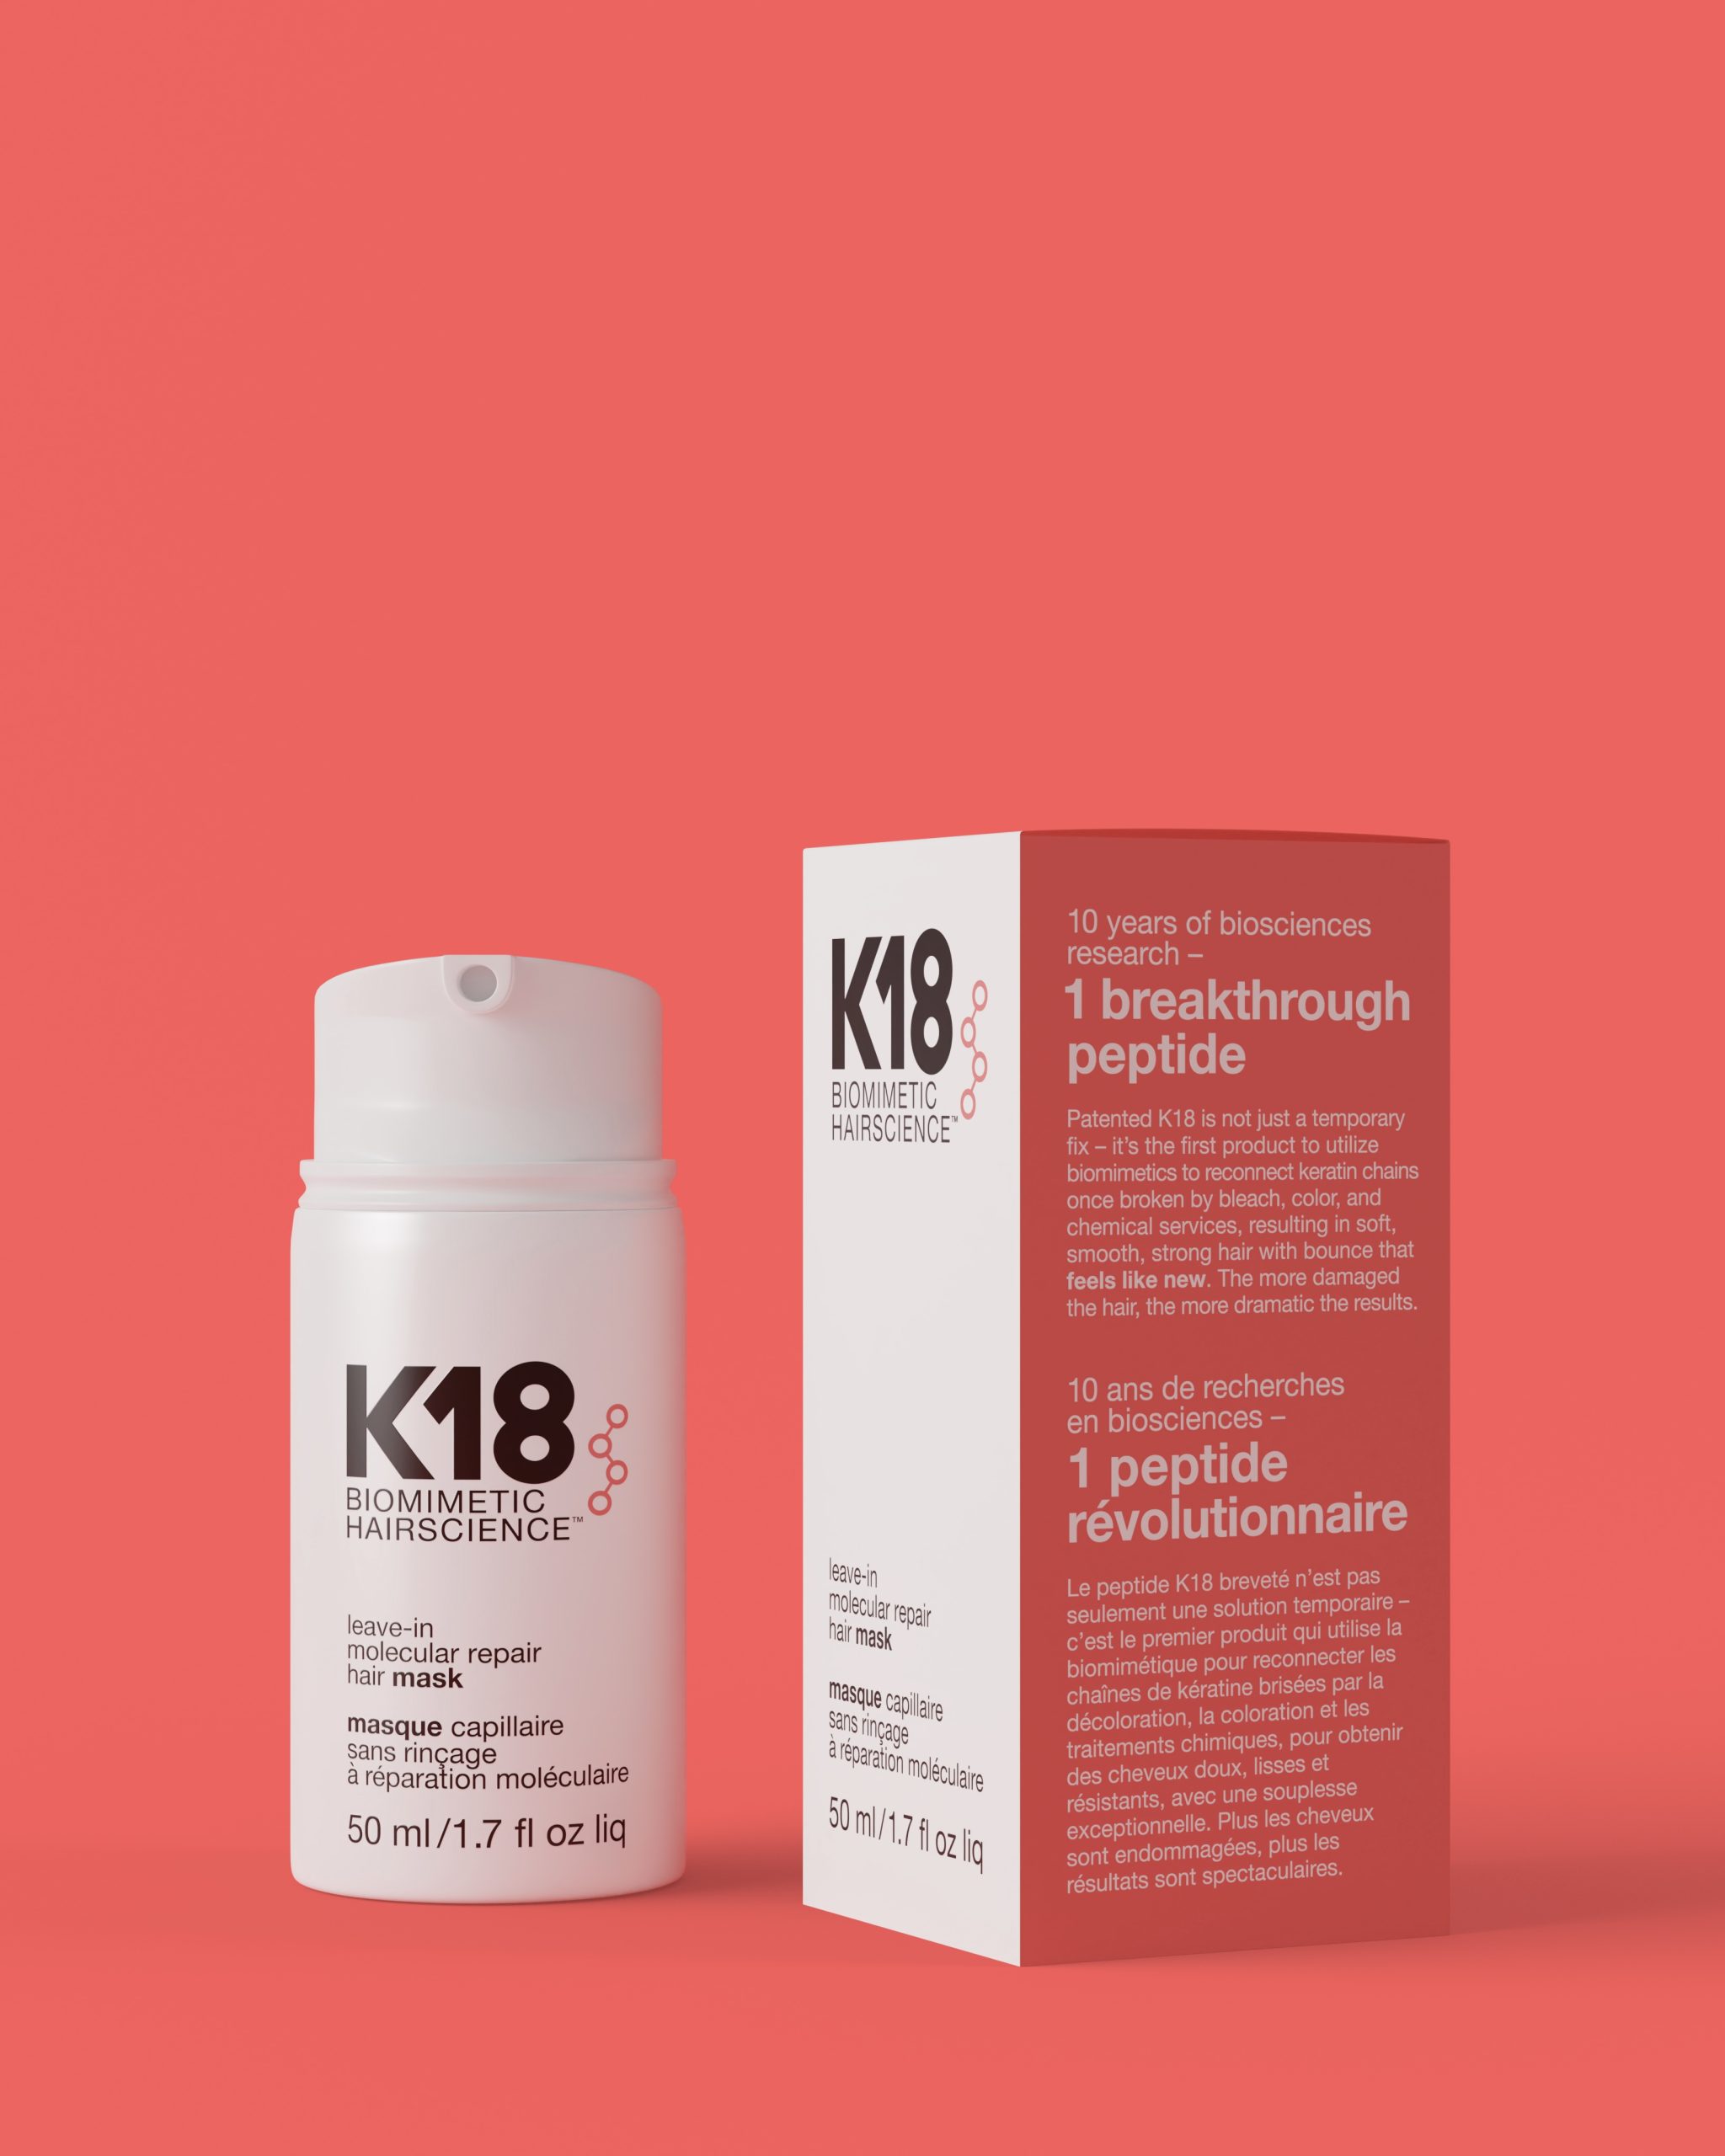 máscara de reparación molecular leave-in – K18 Hair